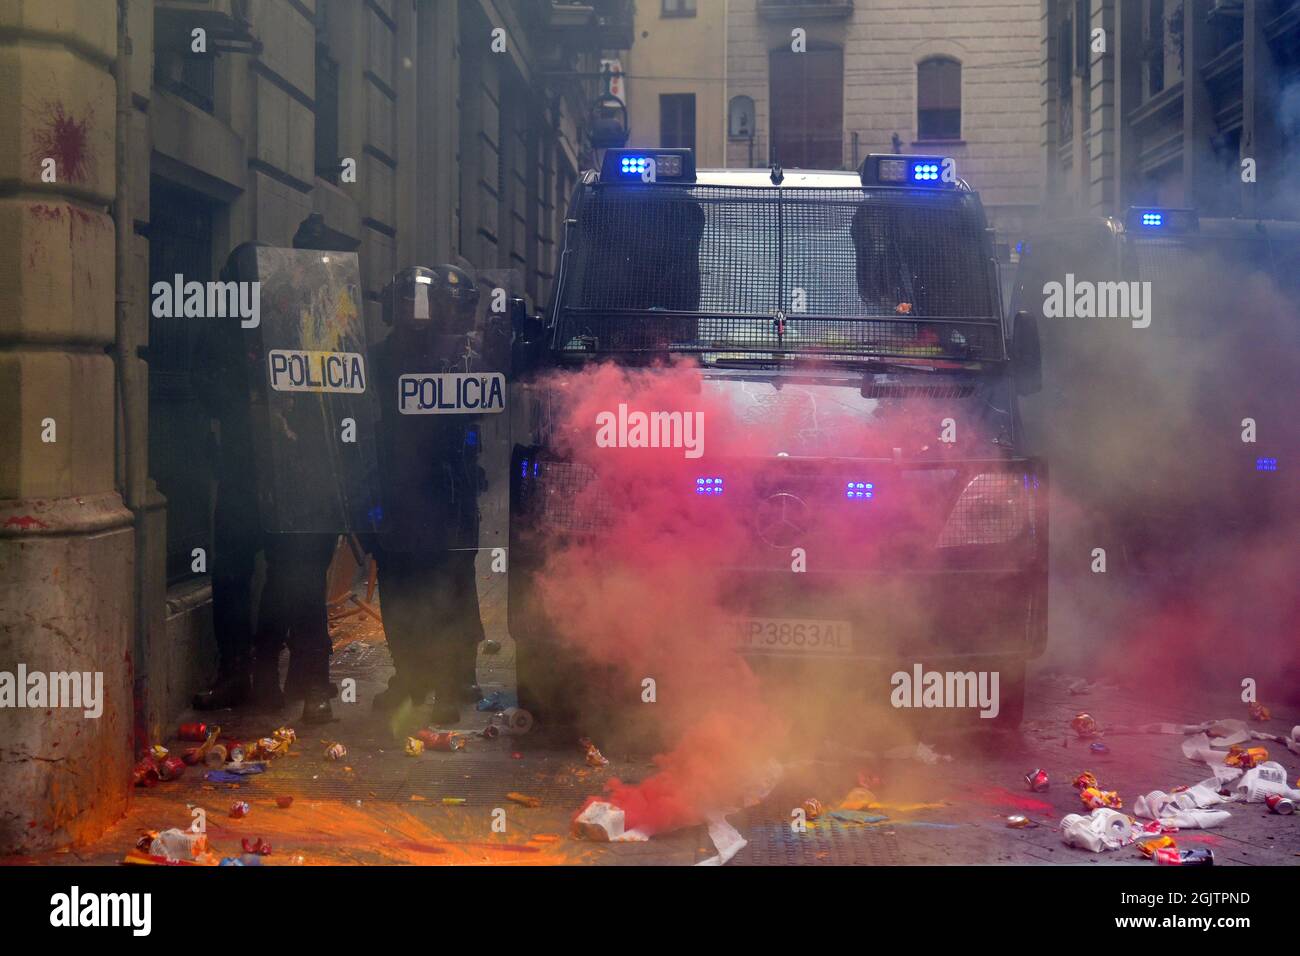 Les agents de la police espagnole reçoivent des bombes de fumée et de peinture des manifestants lors de la manifestation de la Journée nationale de Catalogne.des manifestants pro-indépendantistes pendant la Journée nationale de Catalogne affrontent la police catalane (Mossos d'Escuadra) pour jeter des bombes de peinture, de fumée, quelques canettes, des extincteurs, Des bouteilles et des barres de fer à la police espagnole de leur quartier général à Barcelone pour protester contre les accusations de police portées lors du référendum illégal de 2017. (Photo de Ramon Costa / SOPA Images / Sipa USA) Banque D'Images